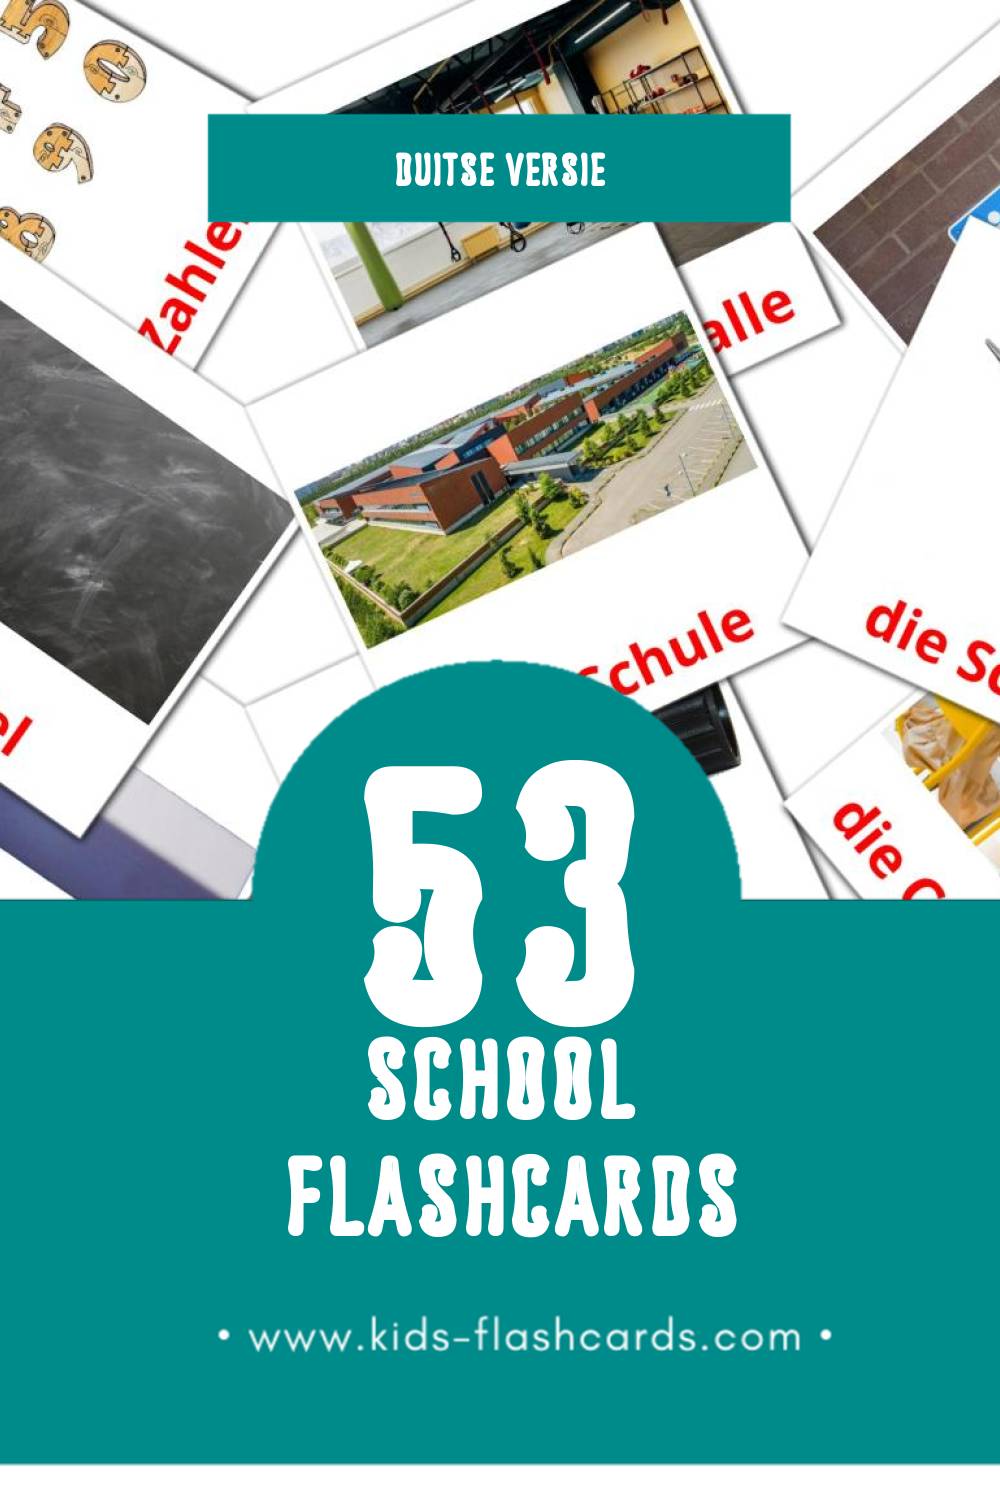 Visuele Schule Flashcards voor Kleuters (53 kaarten in het Duits)